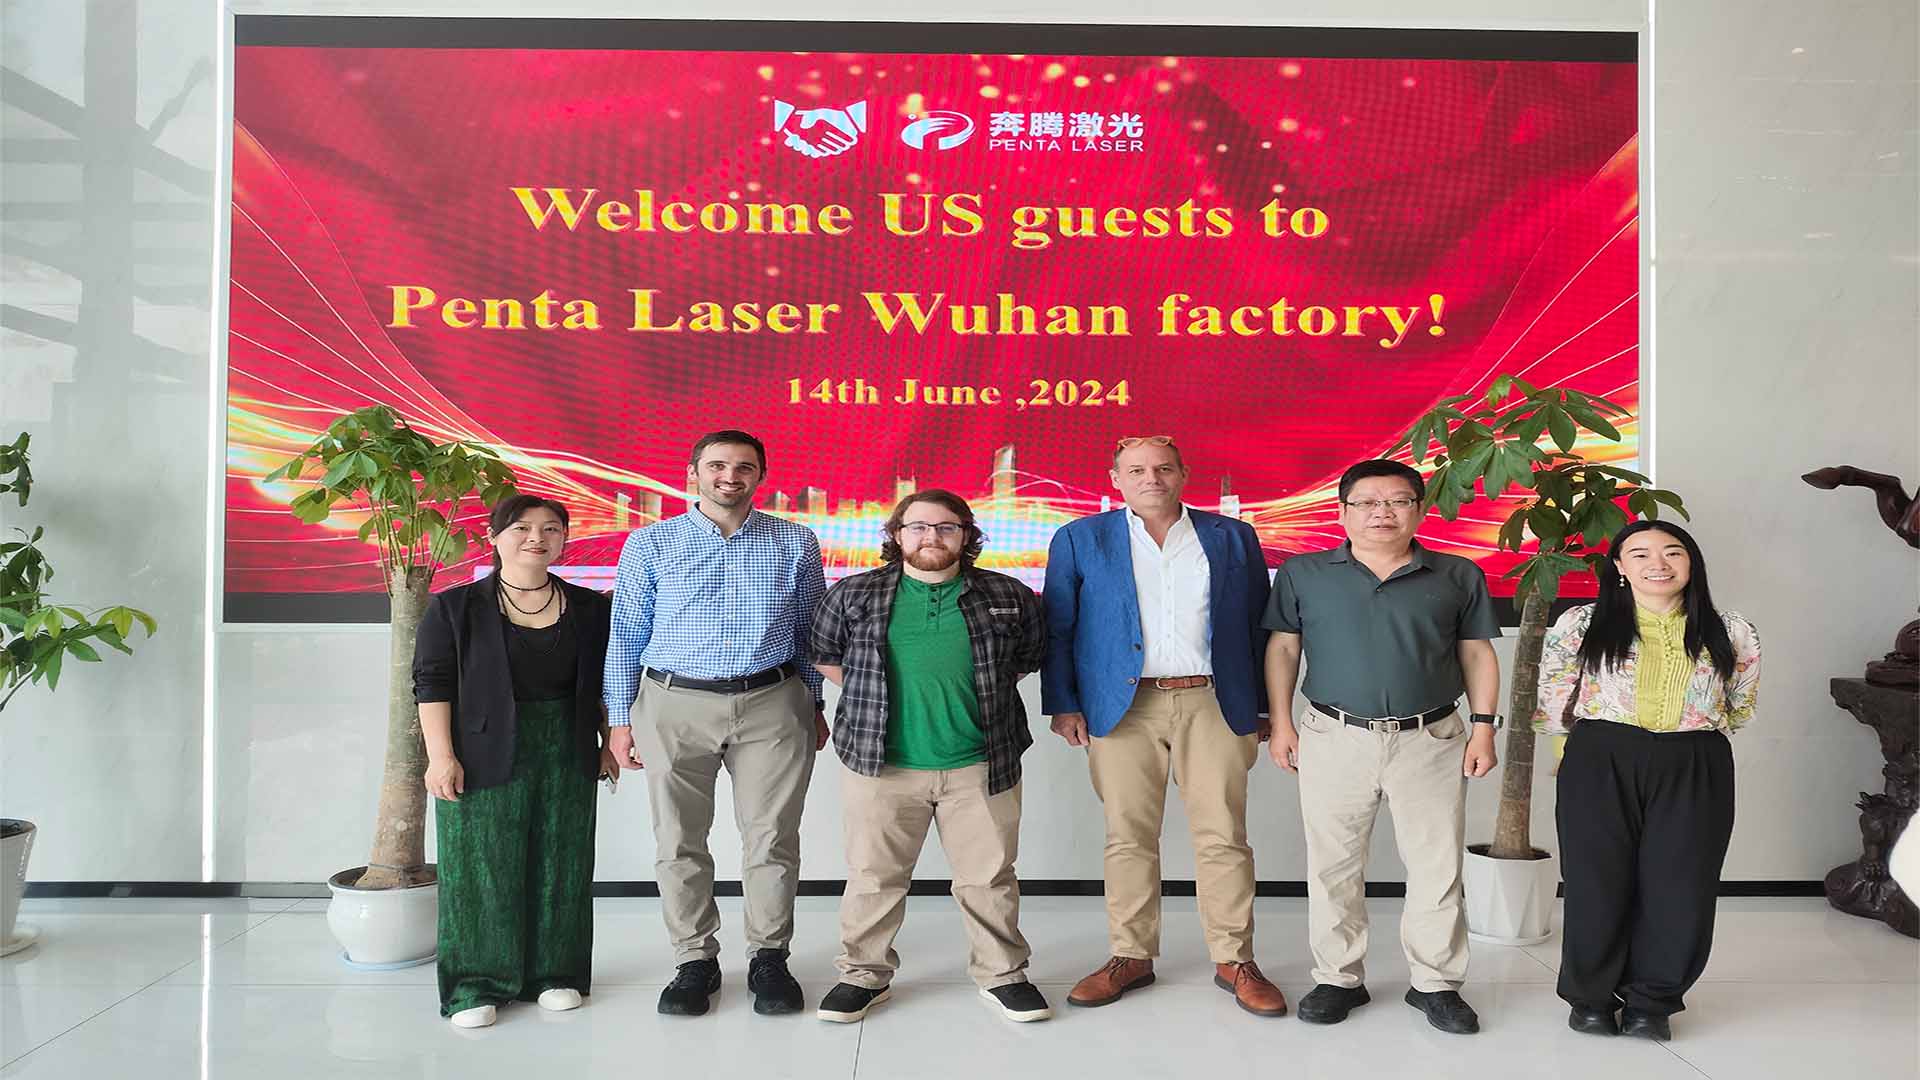 Penta Laser снова приветствует американских клиентов, чтобы продемонстрировать мощь своей высокотехнологичной технологии лазерной резки.